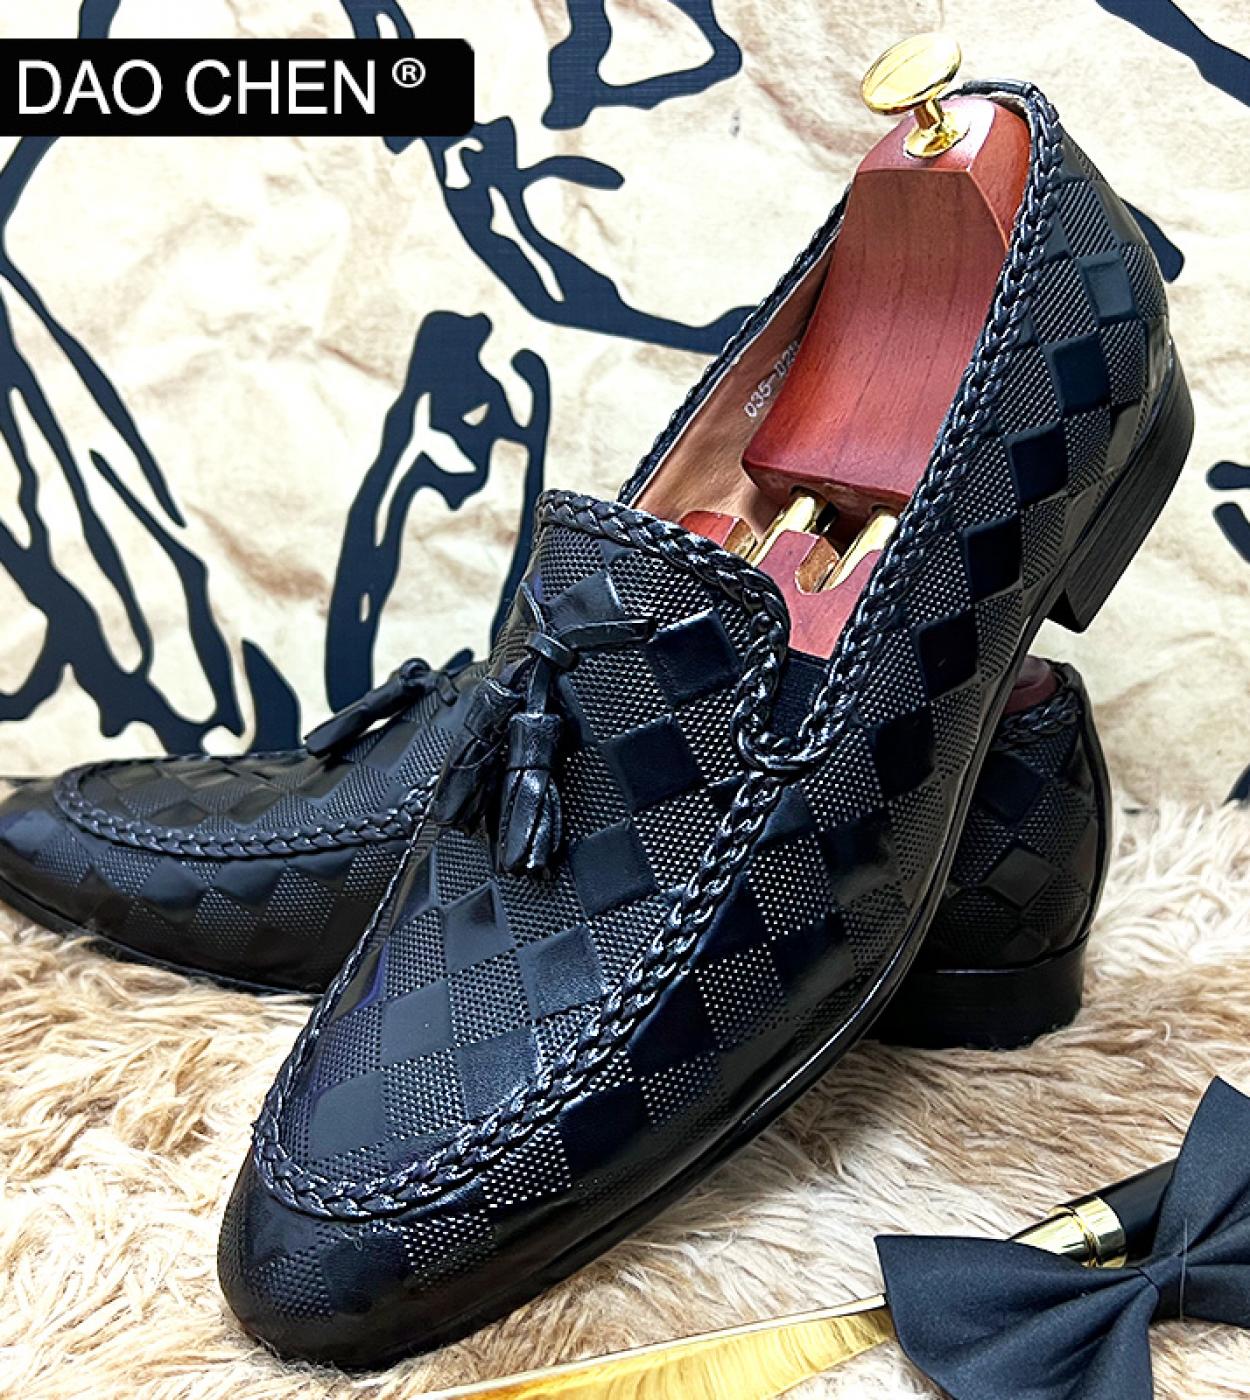 91,16 US$-Zapatos de hombre diseño italiano de moda Zapatos hombre de estilo italiano Hombres italianos-Description